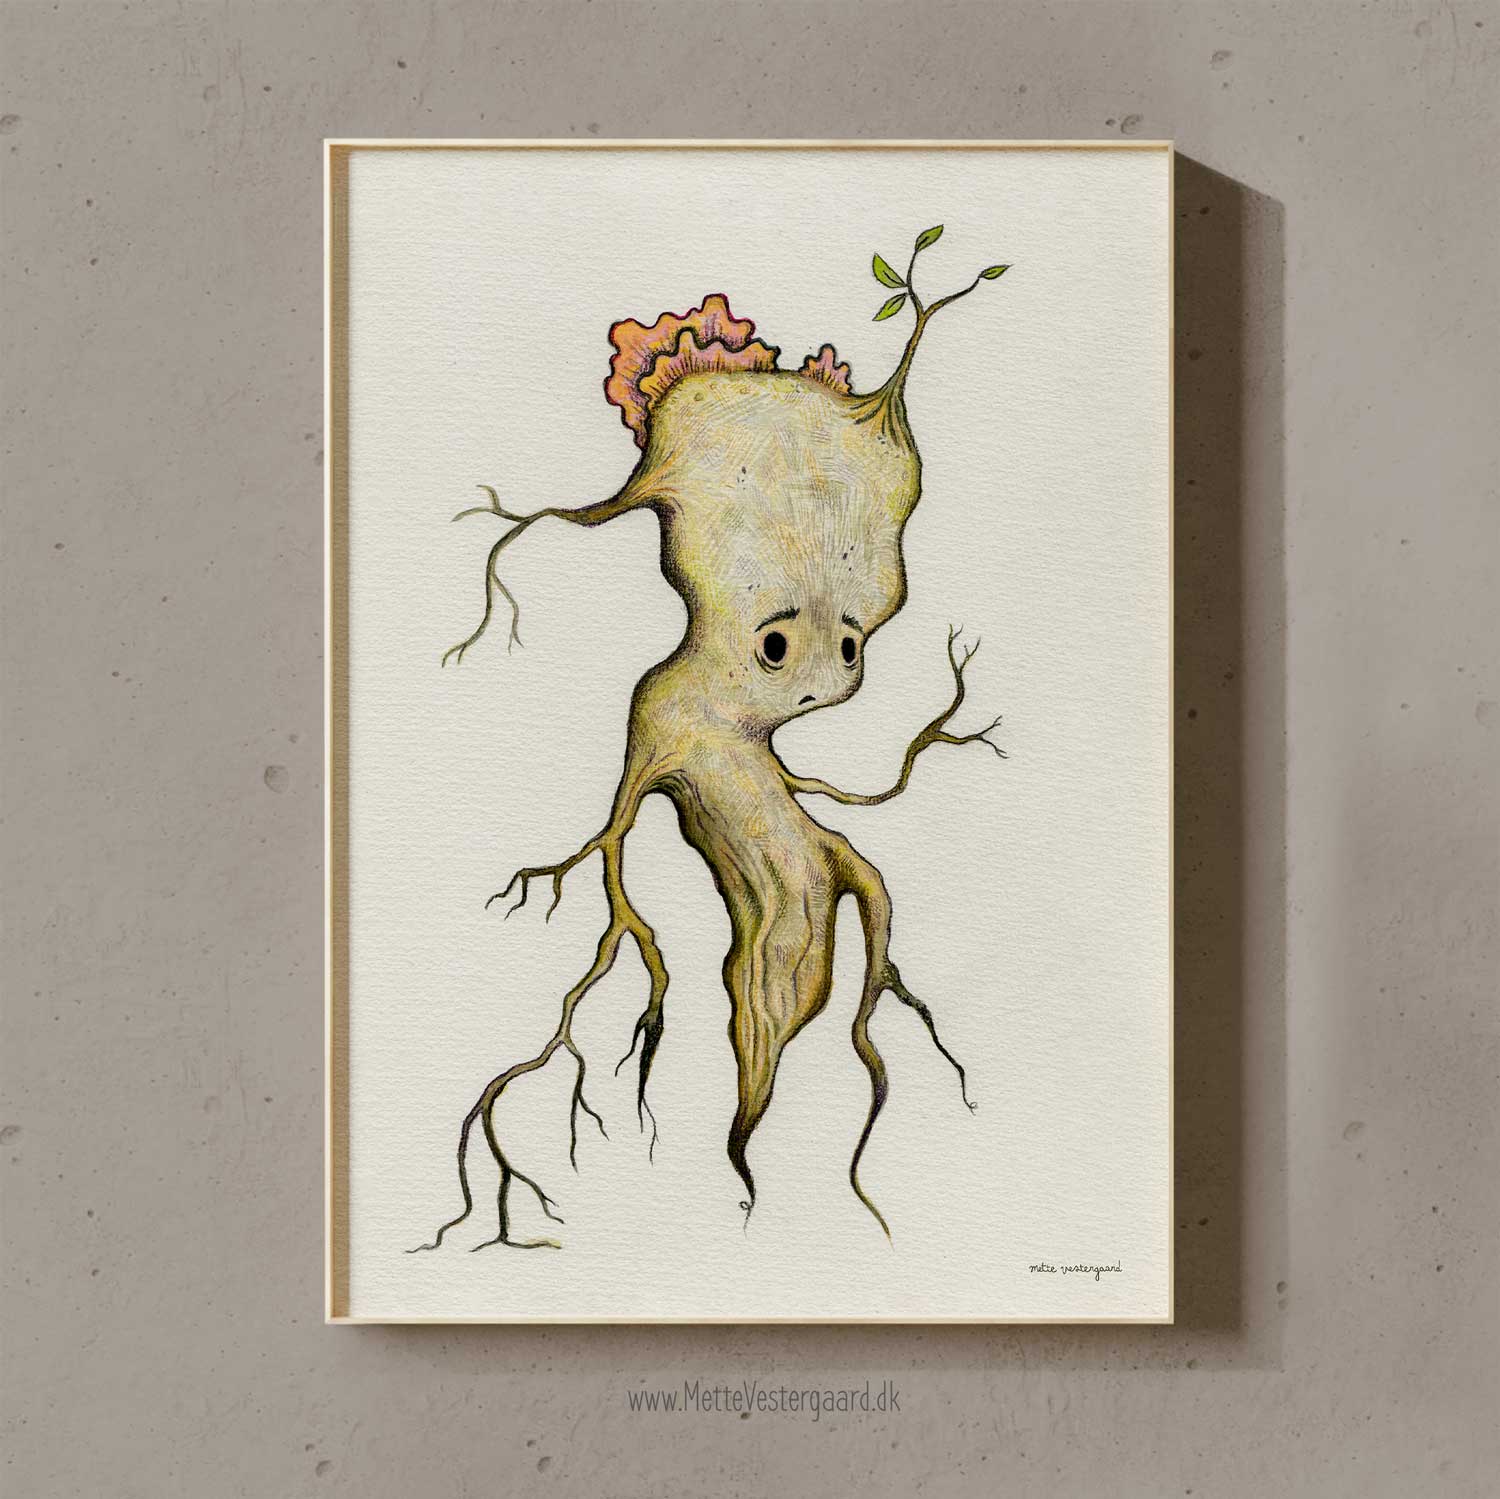 Illustration af en lille rod der ser lidt trist ud. På hovedet vokser der en svamp og en spire er på vej, der symboliserer at den lille rod ikke skal give op.